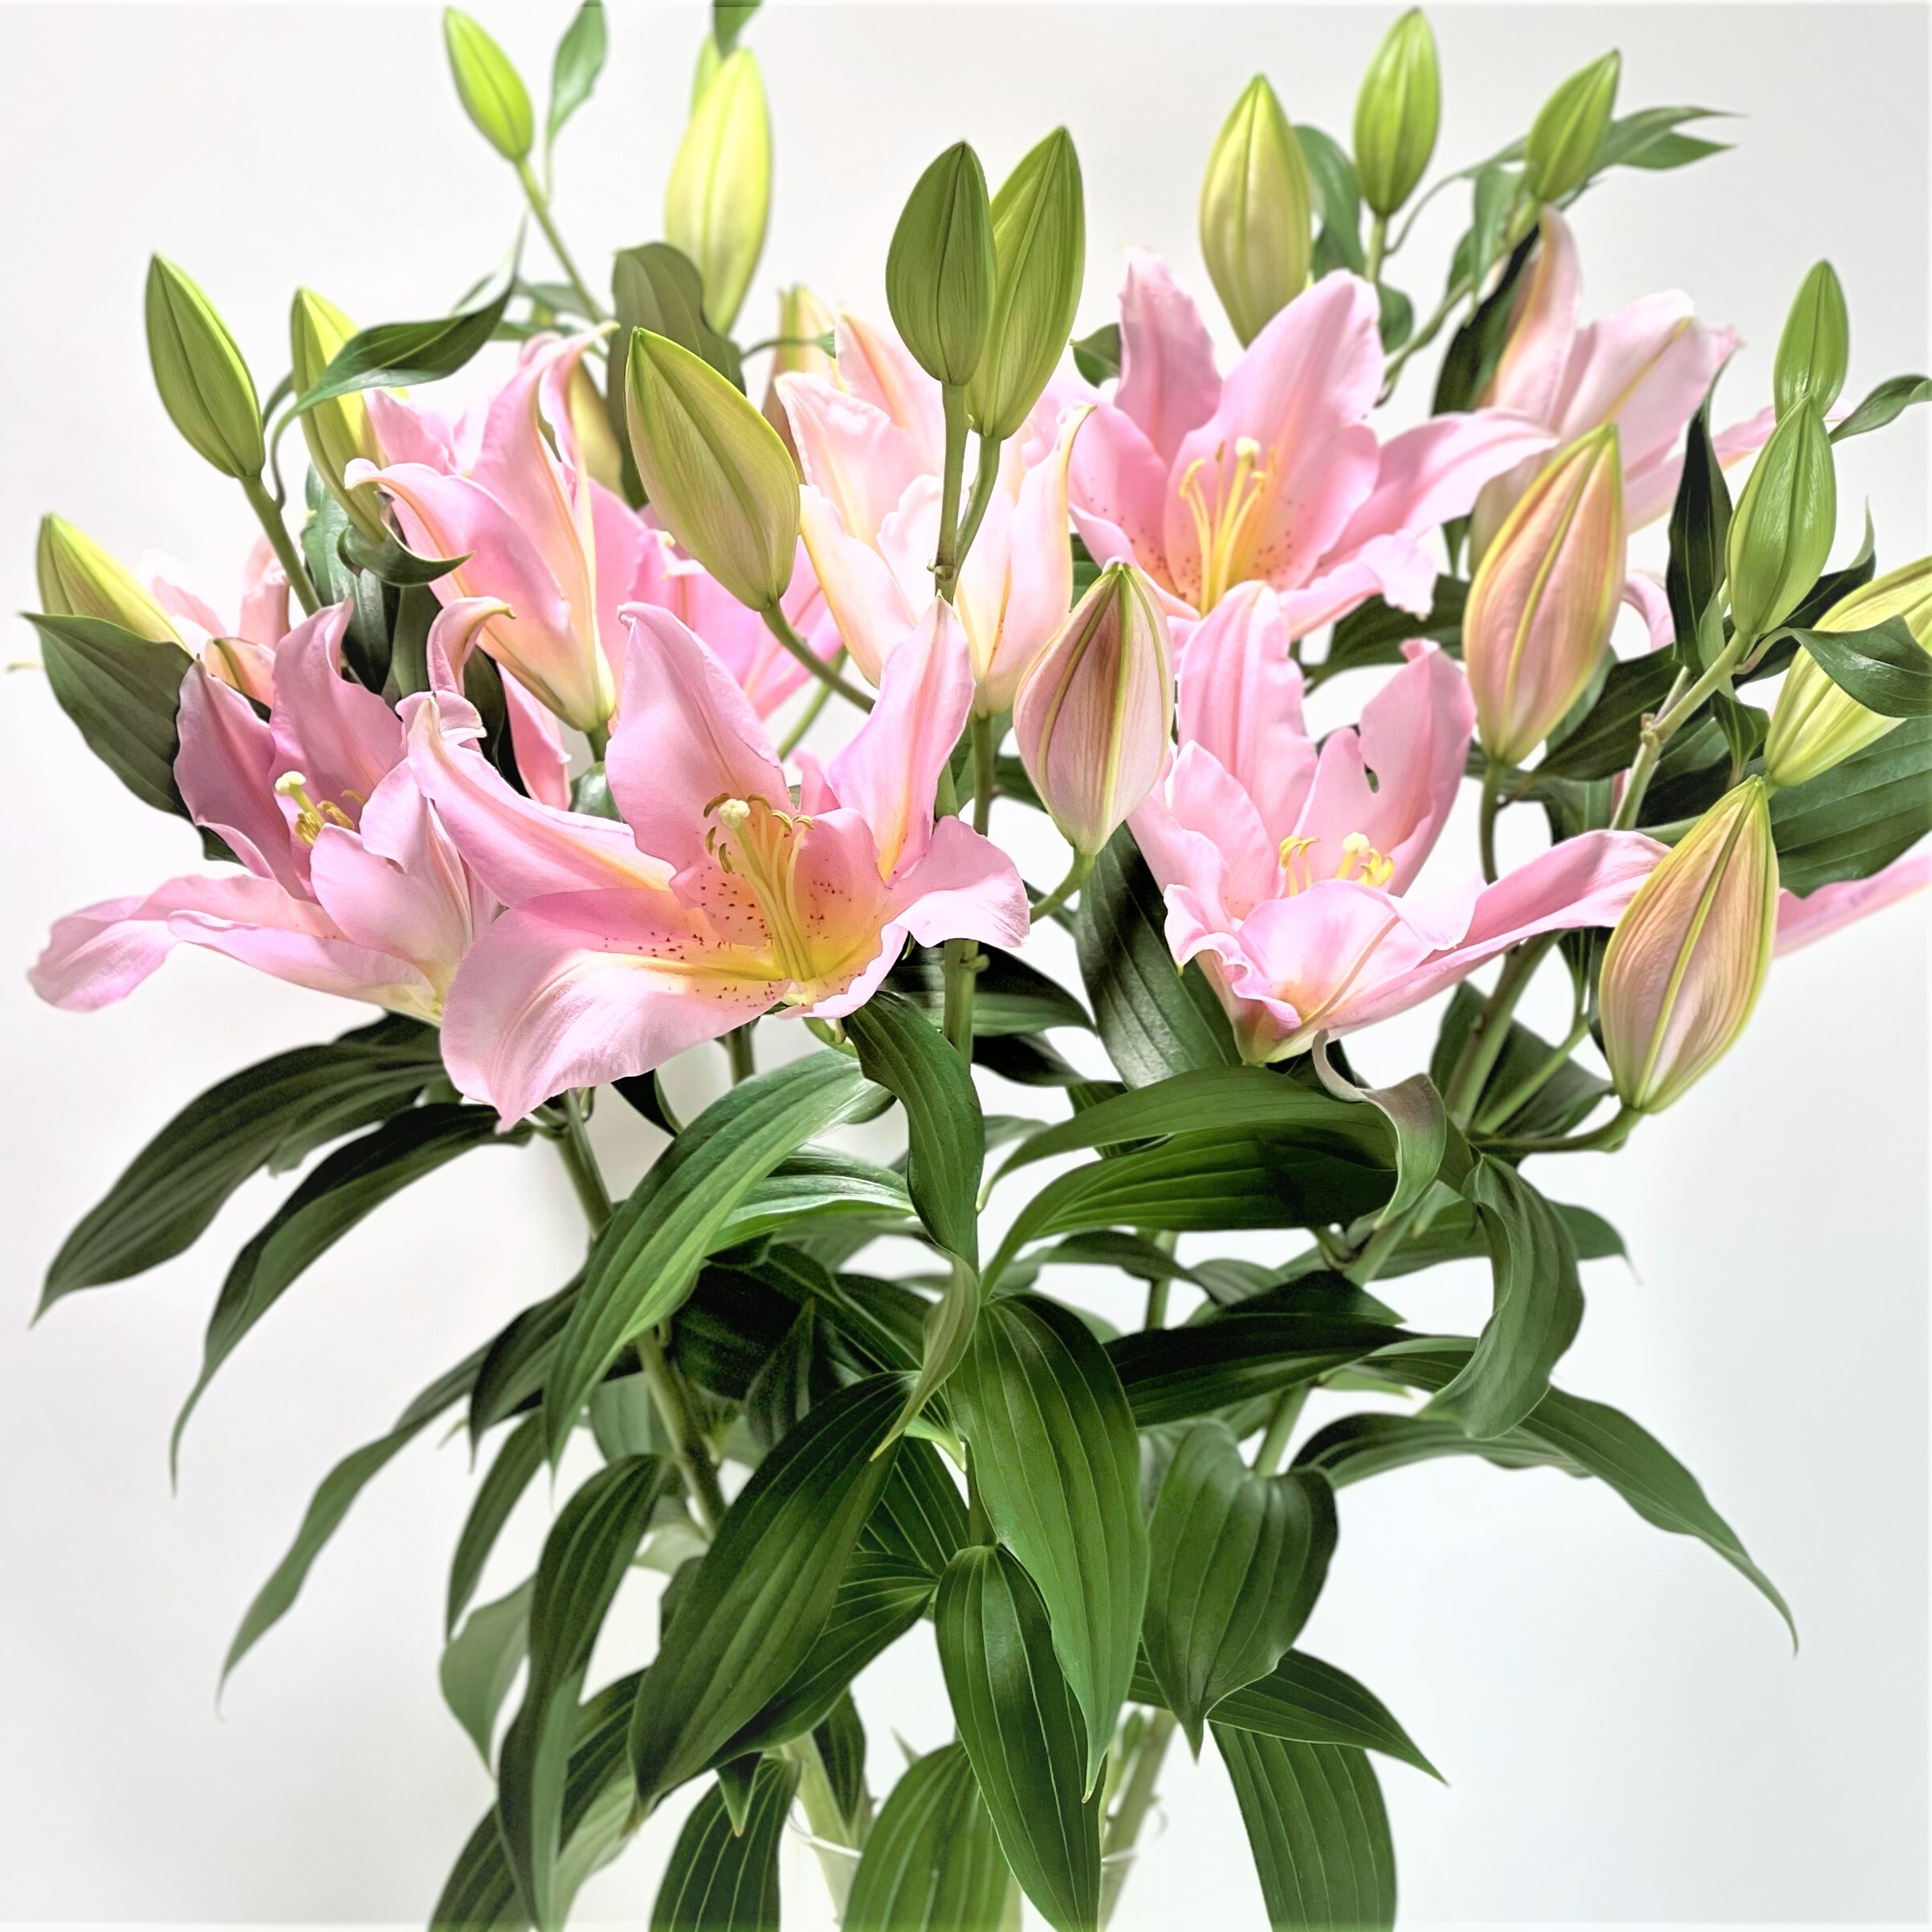 オリエンタルユリ ベンドーム 5本 よいはな Yoihana 最高品質のお花をお届けするネット通販